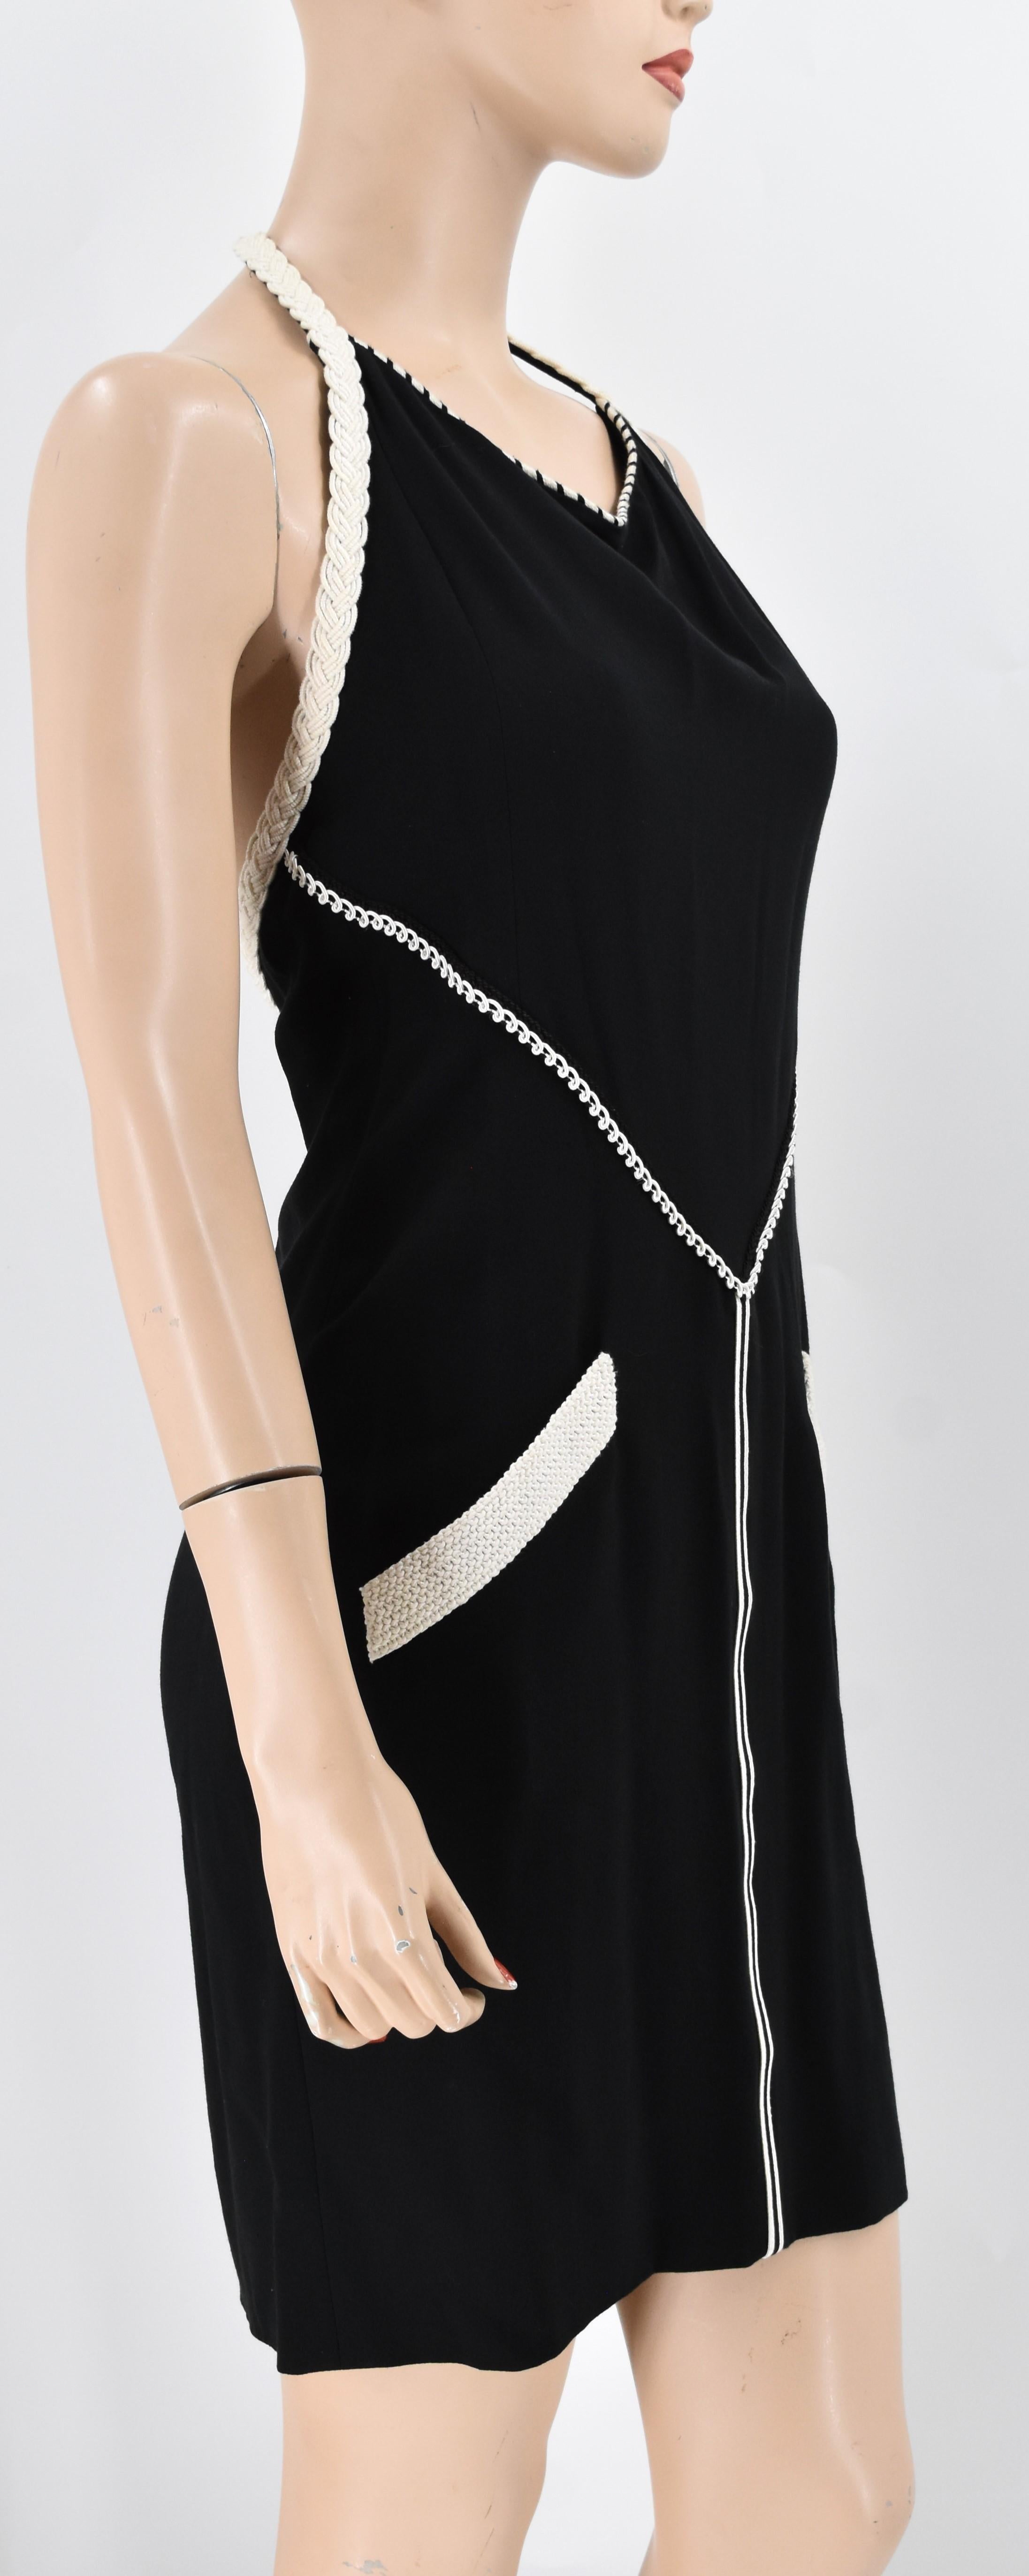 Chanel Boutique Vintage Neckholder-Kleid mit geflochtenen Borten verziert. Der Spiegel ist in ausgezeichnetem Zustand. Die Farbe ist eine schöne Mischung aus Schwarz und Weiß.